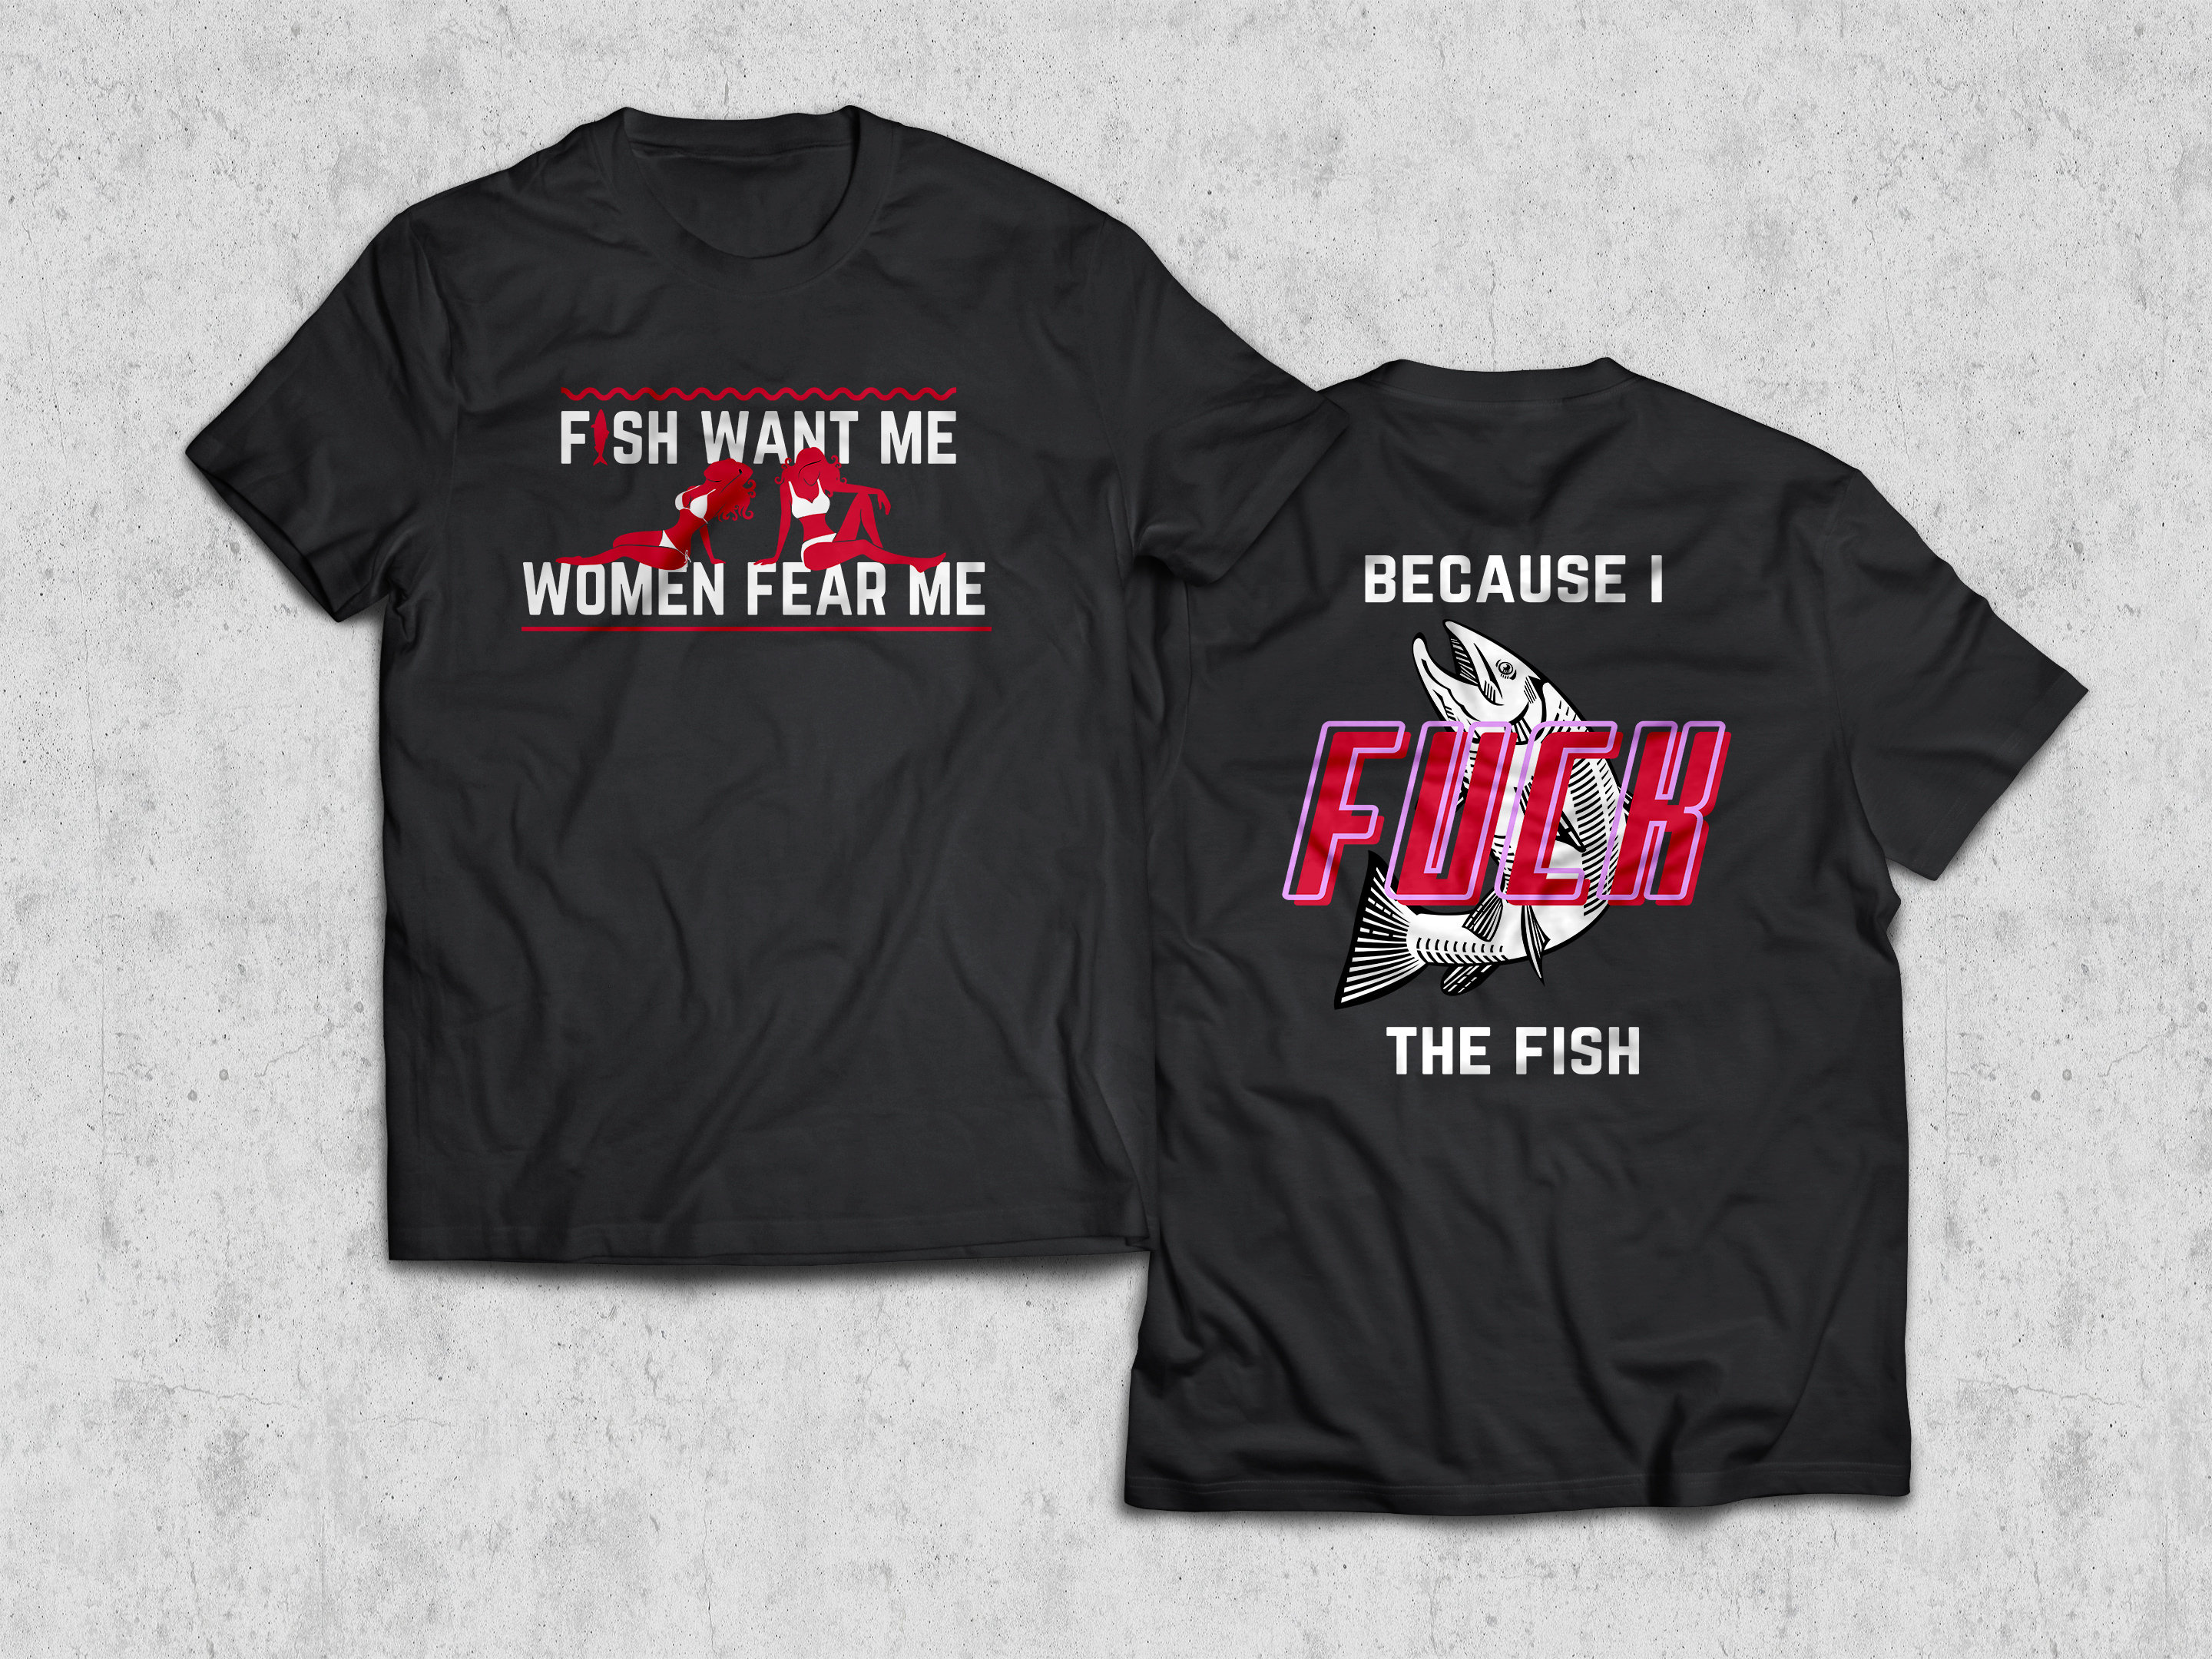 women fear me, fish want me Women's T-Shirt